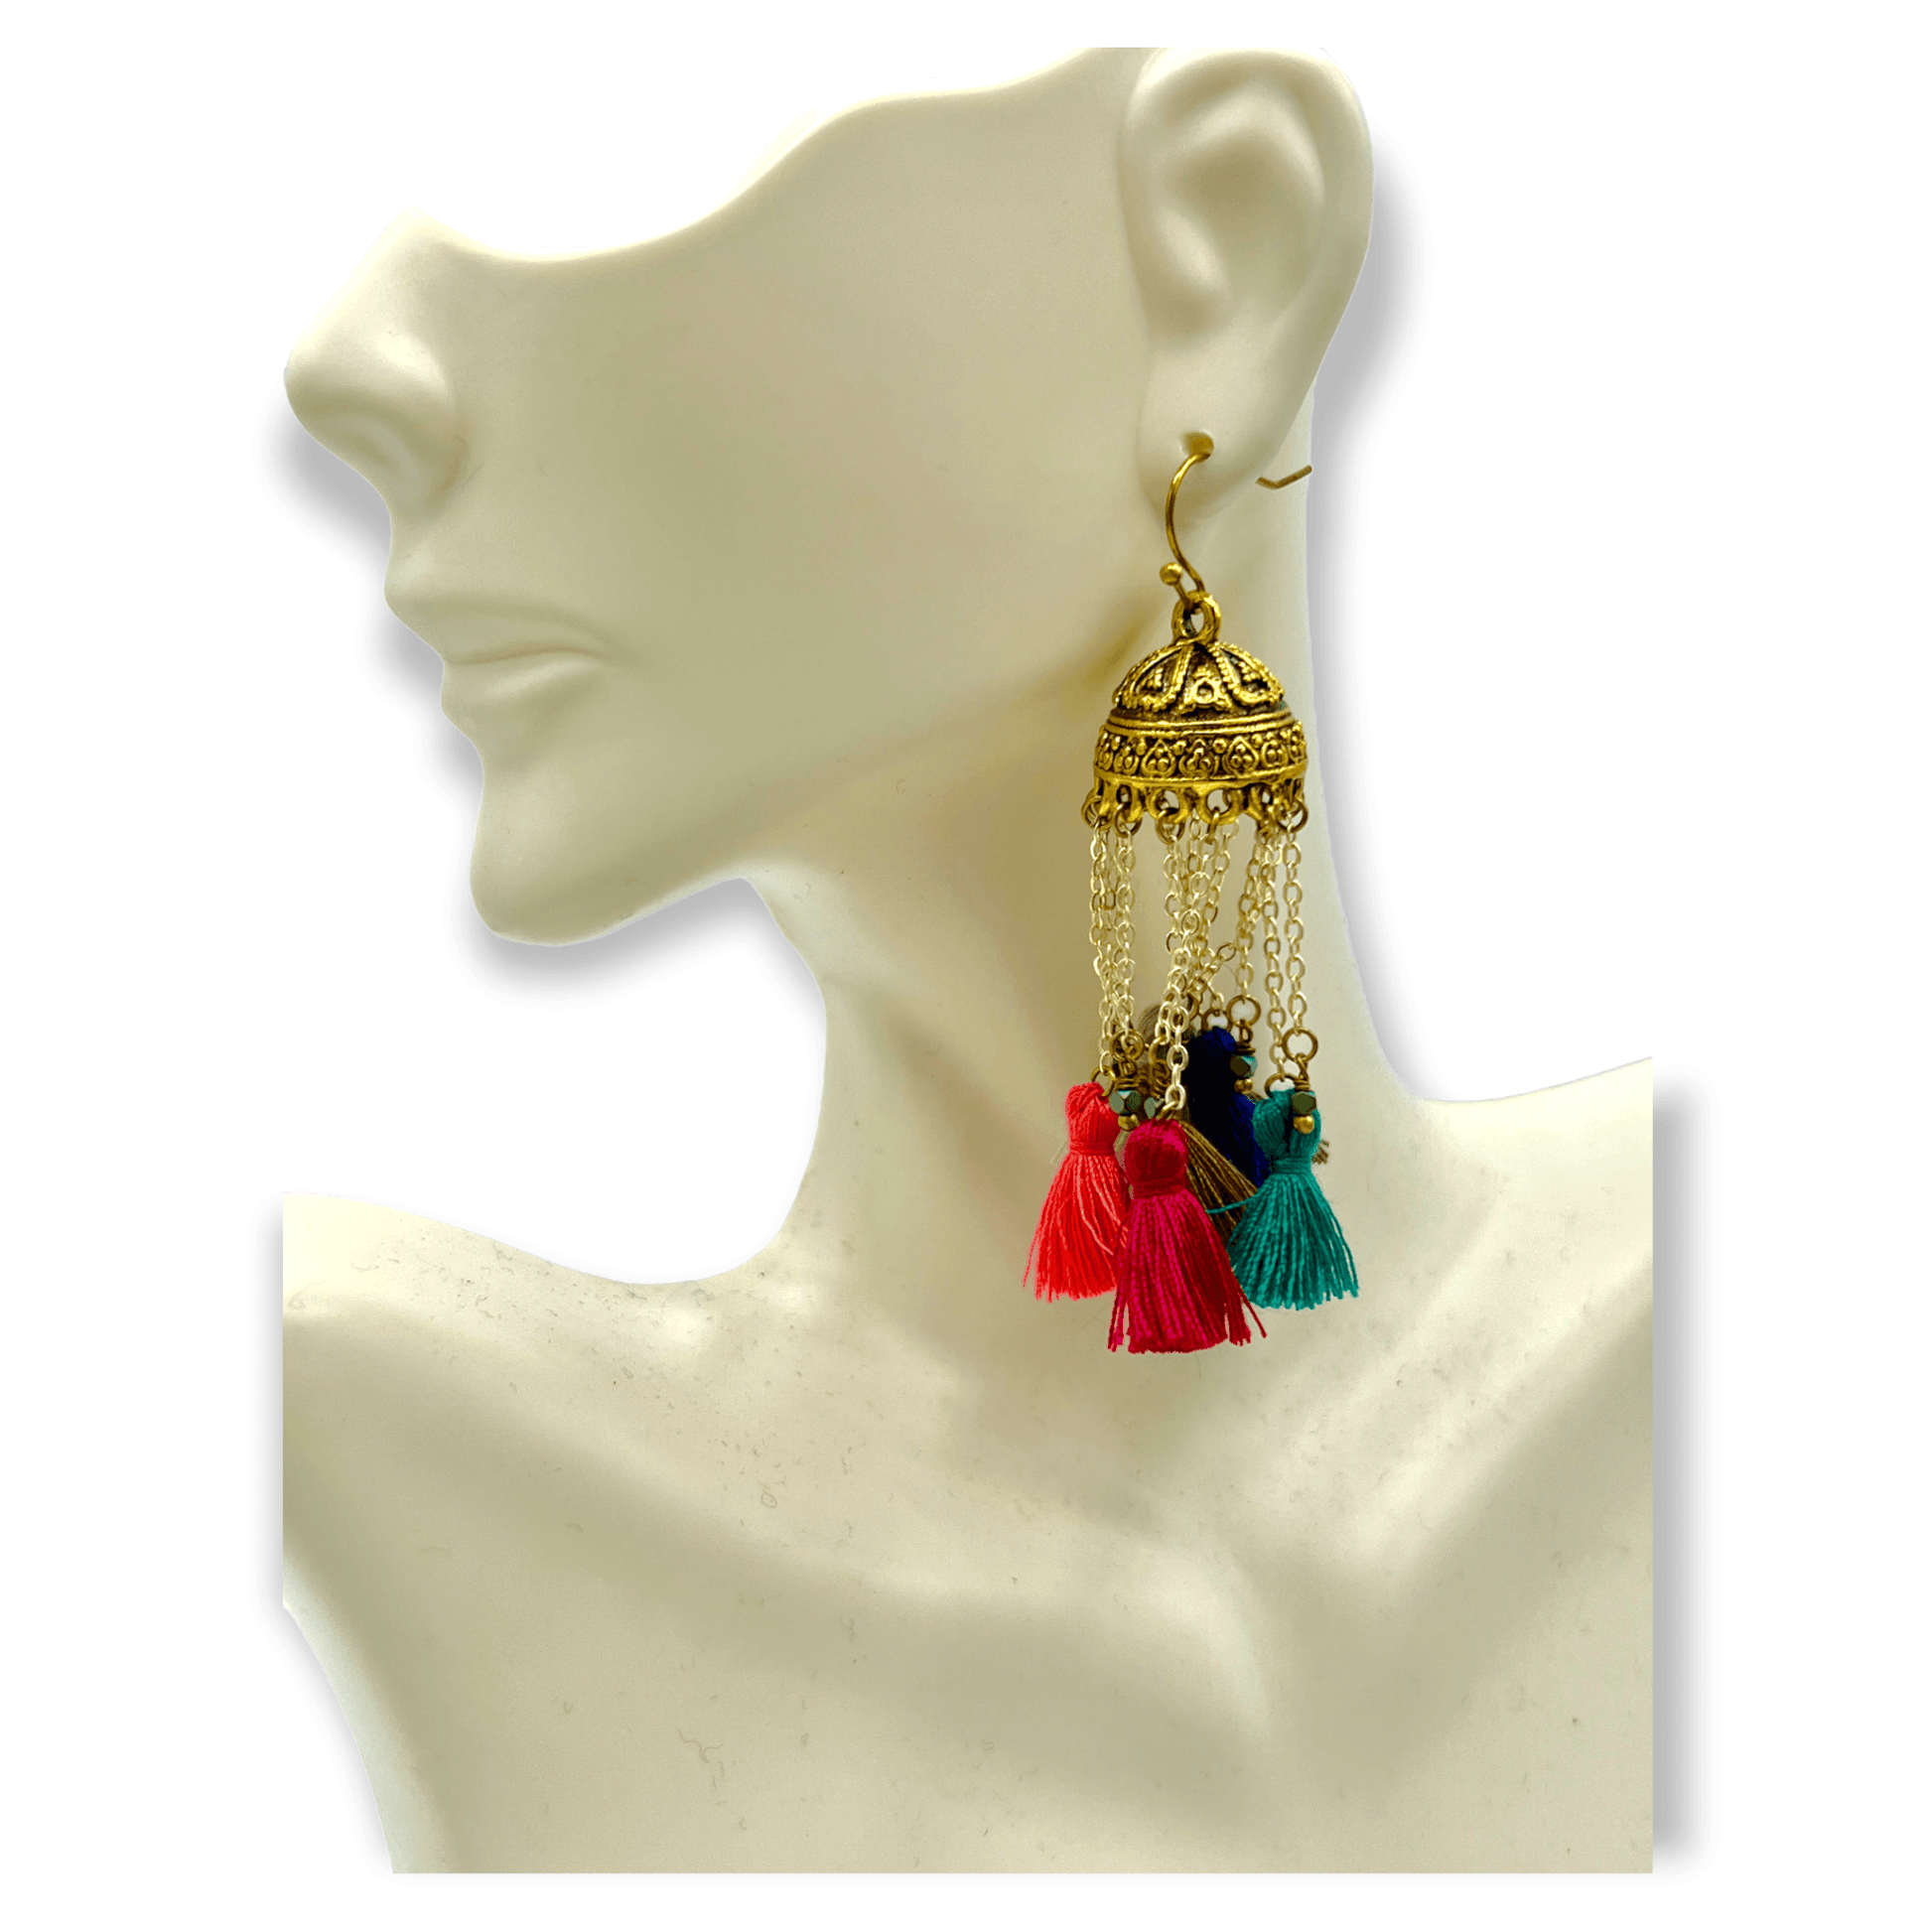 Colorful chandelier drop statement earringsSundara Joon